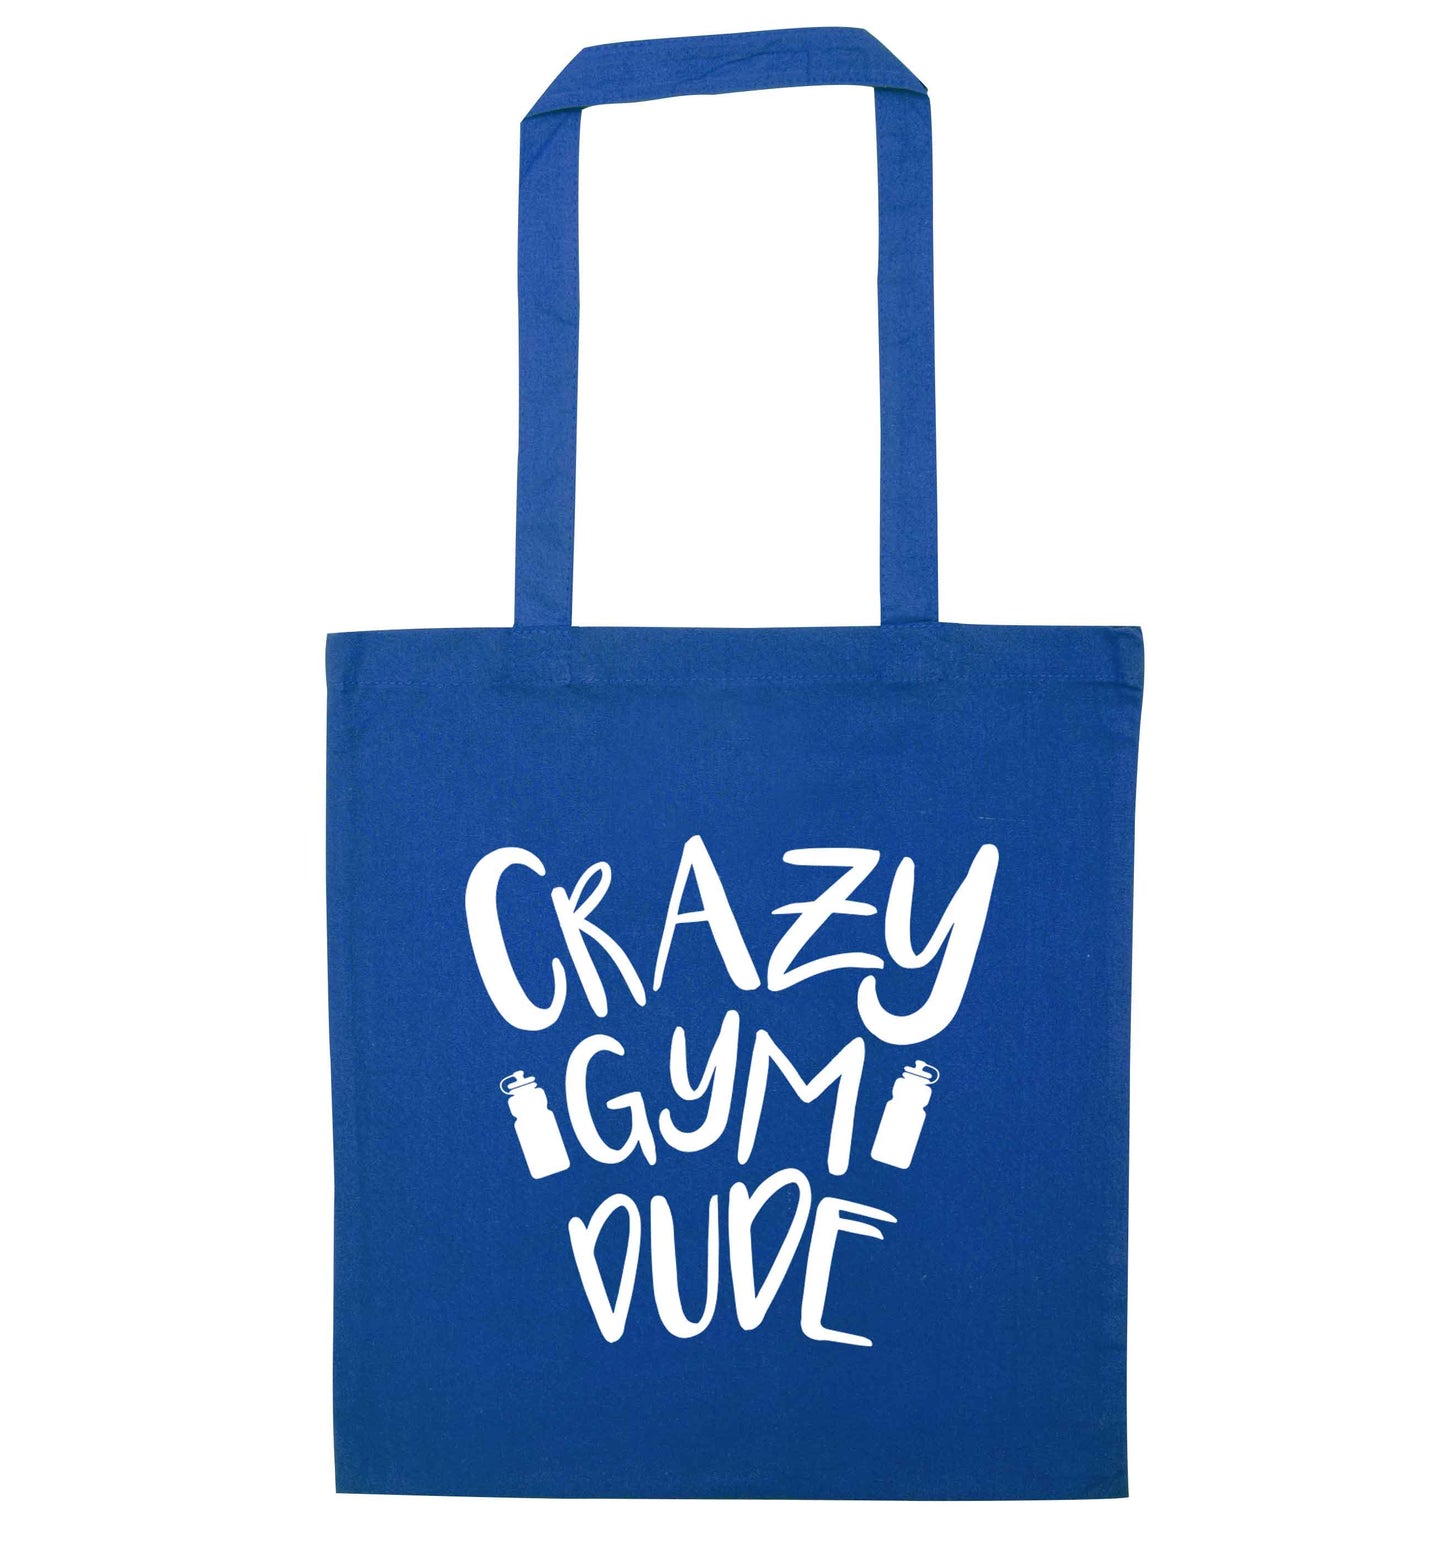 Crazy gym dude blue tote bag